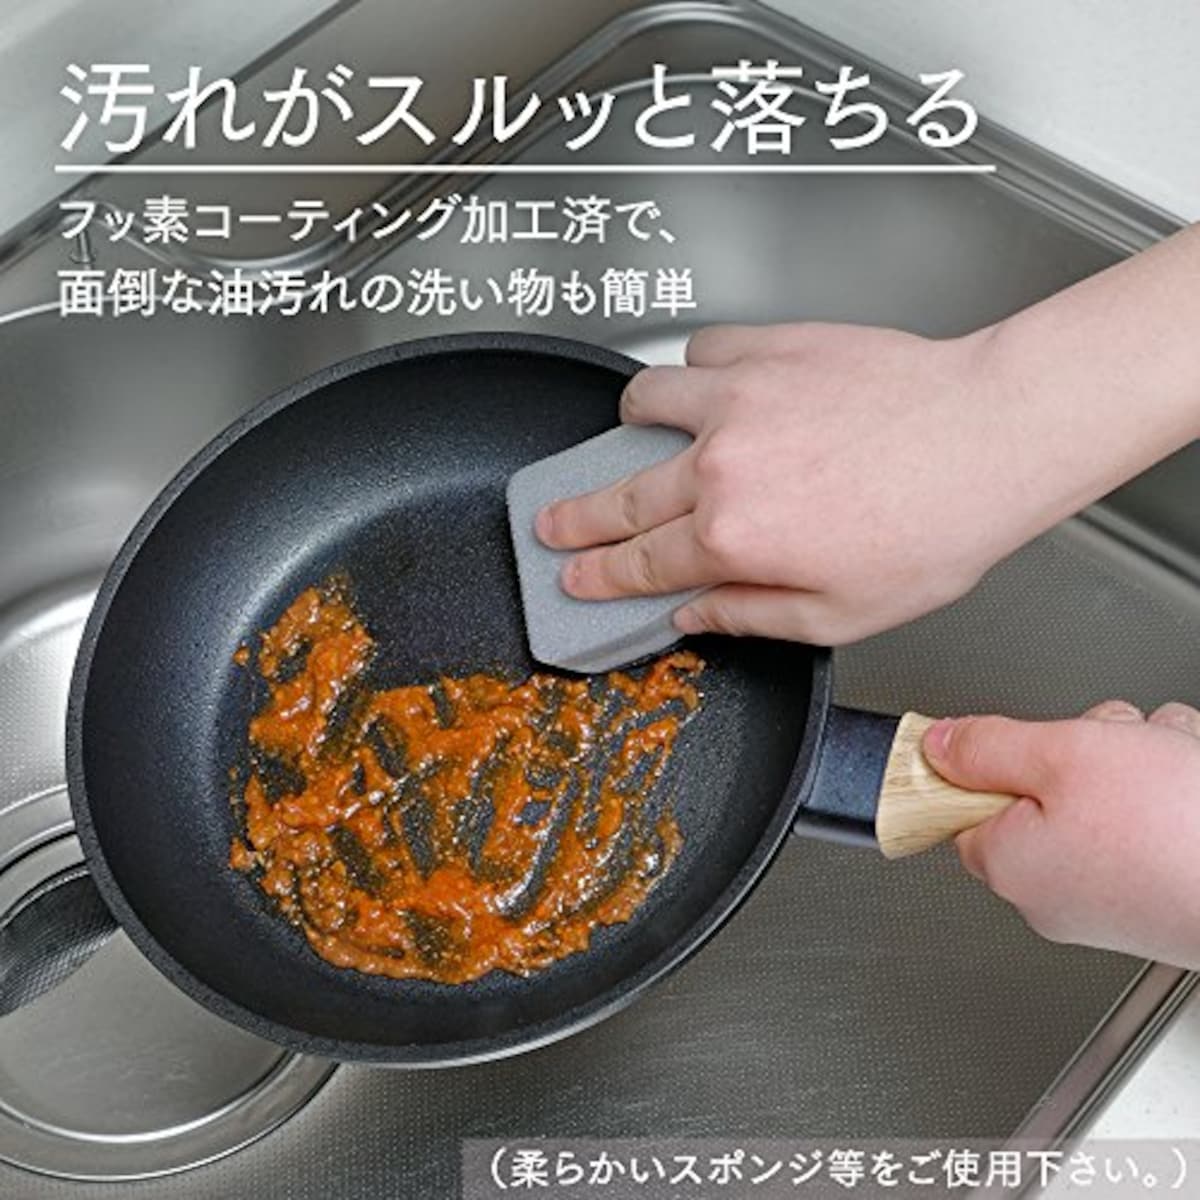  アイリスオーヤマ IH 対応 フライパン 20cm スキレットコートパン ブラック SKL-20IH画像9 